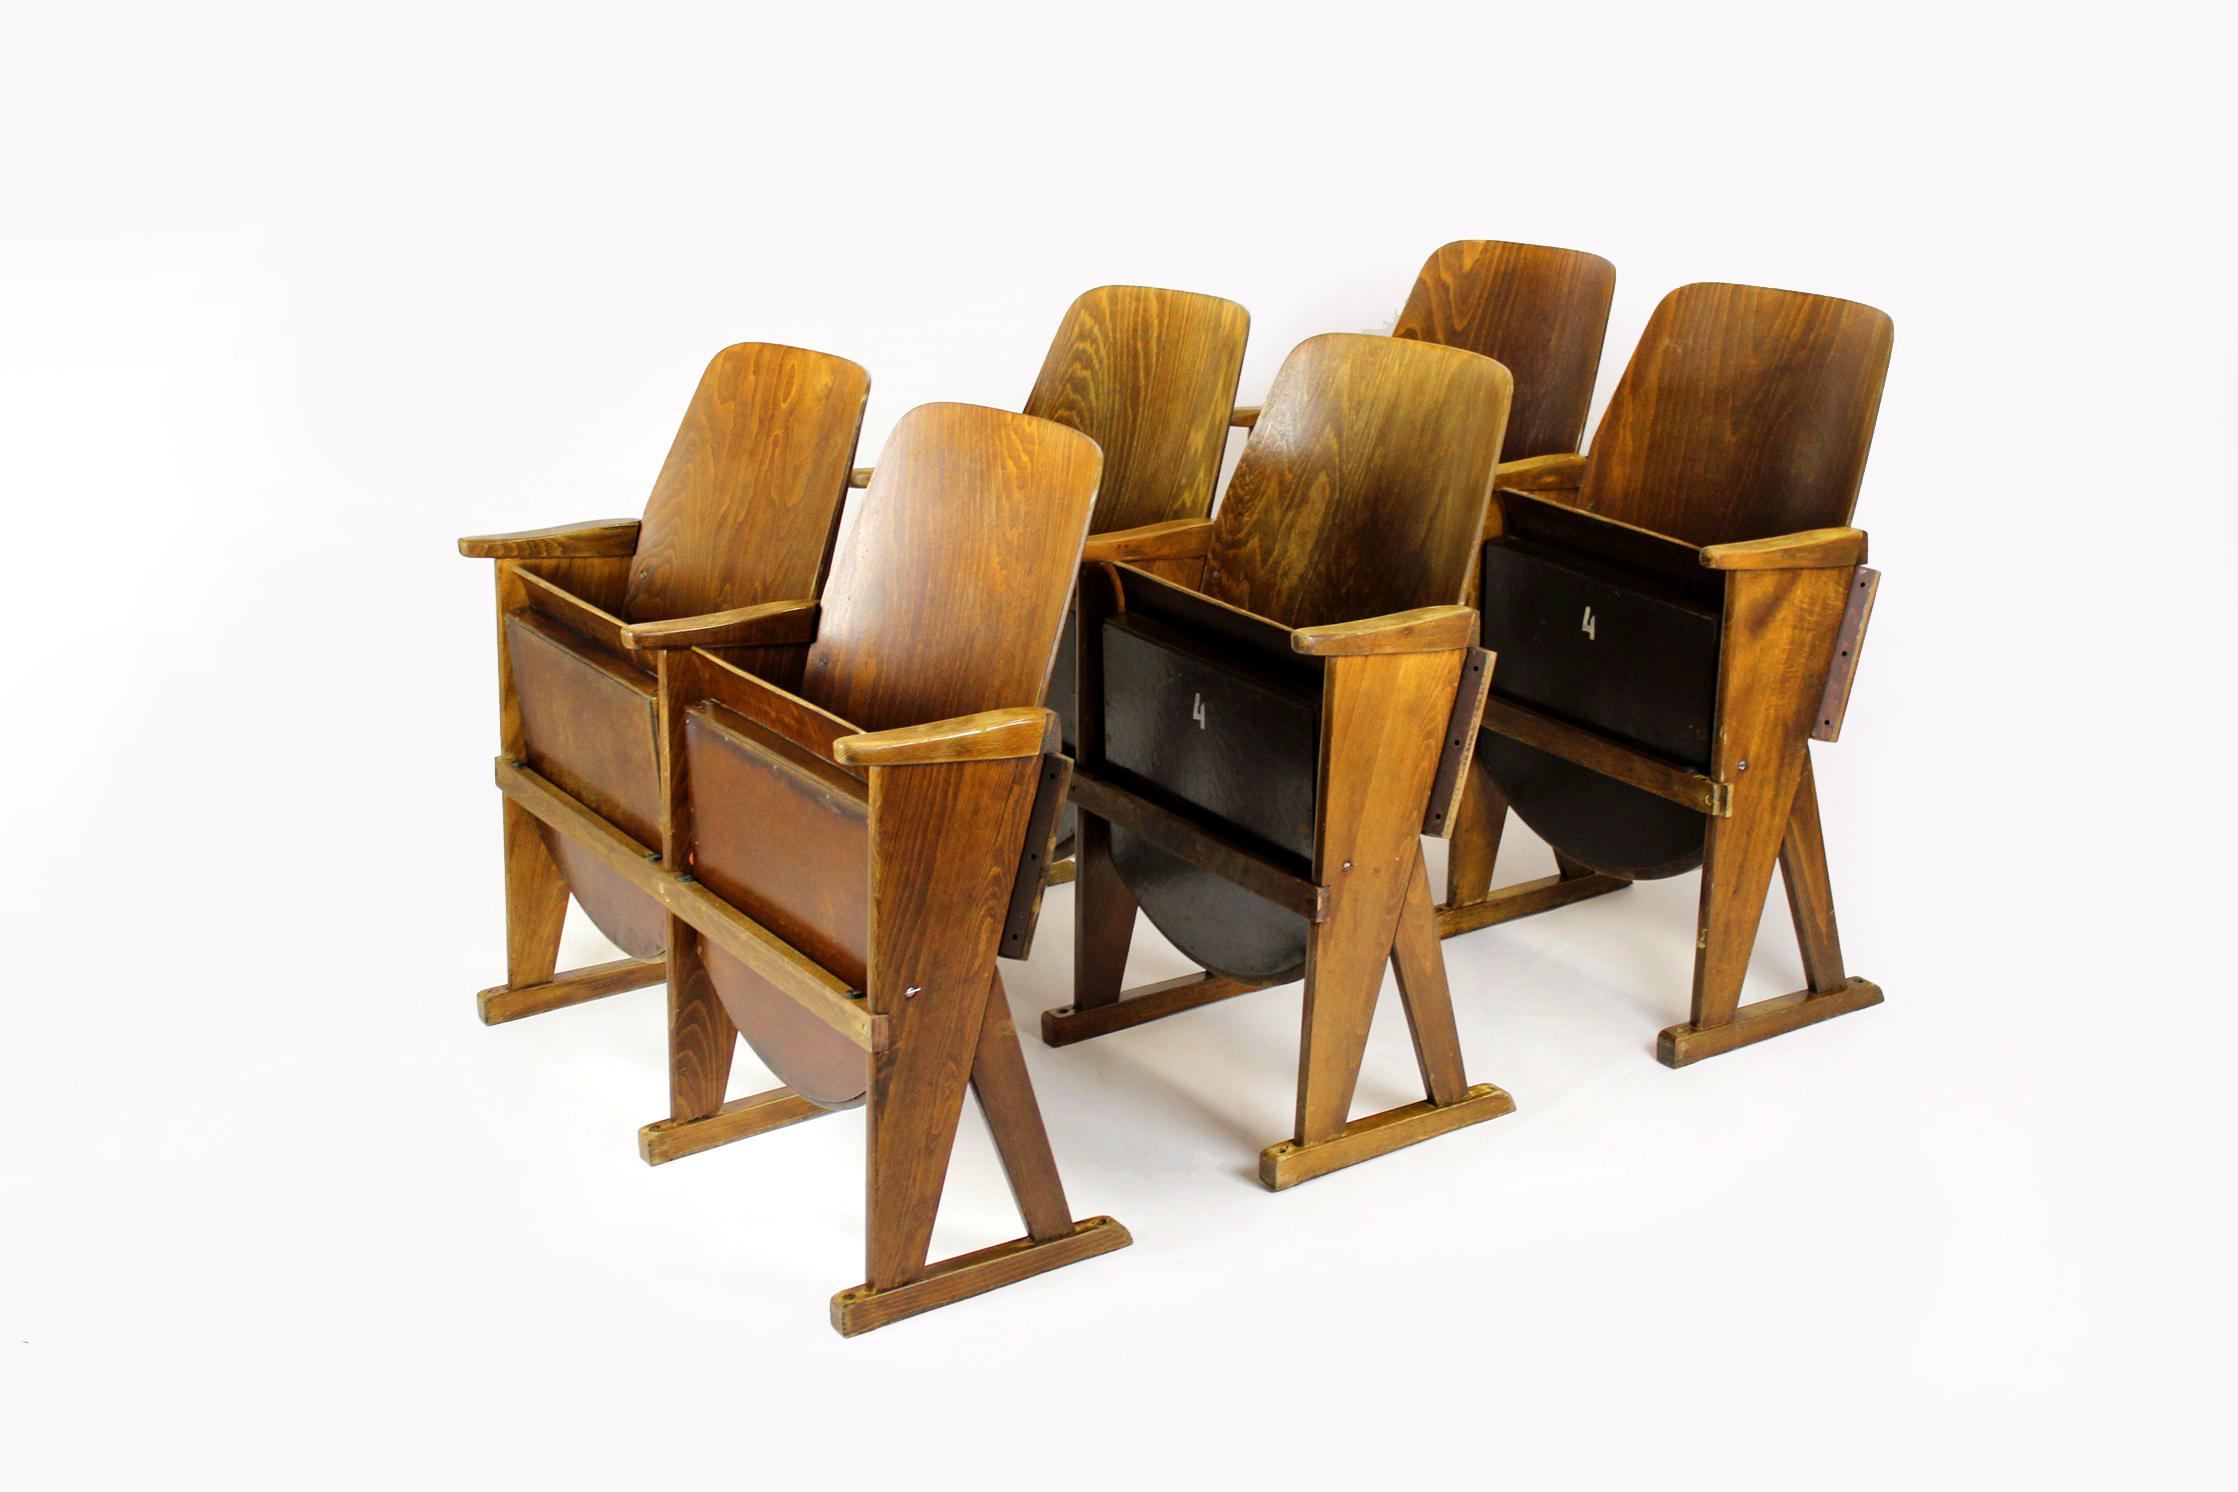 
Sièges de cinéma originaux fabriqués par TON (anciennement Thonet) dans les années 1960, ensemble de trois sièges à deux places (6 chaises). Fabriqué en bois de hêtre et en contreplaqué cintré. Conservé en bon état d'origine avec patine